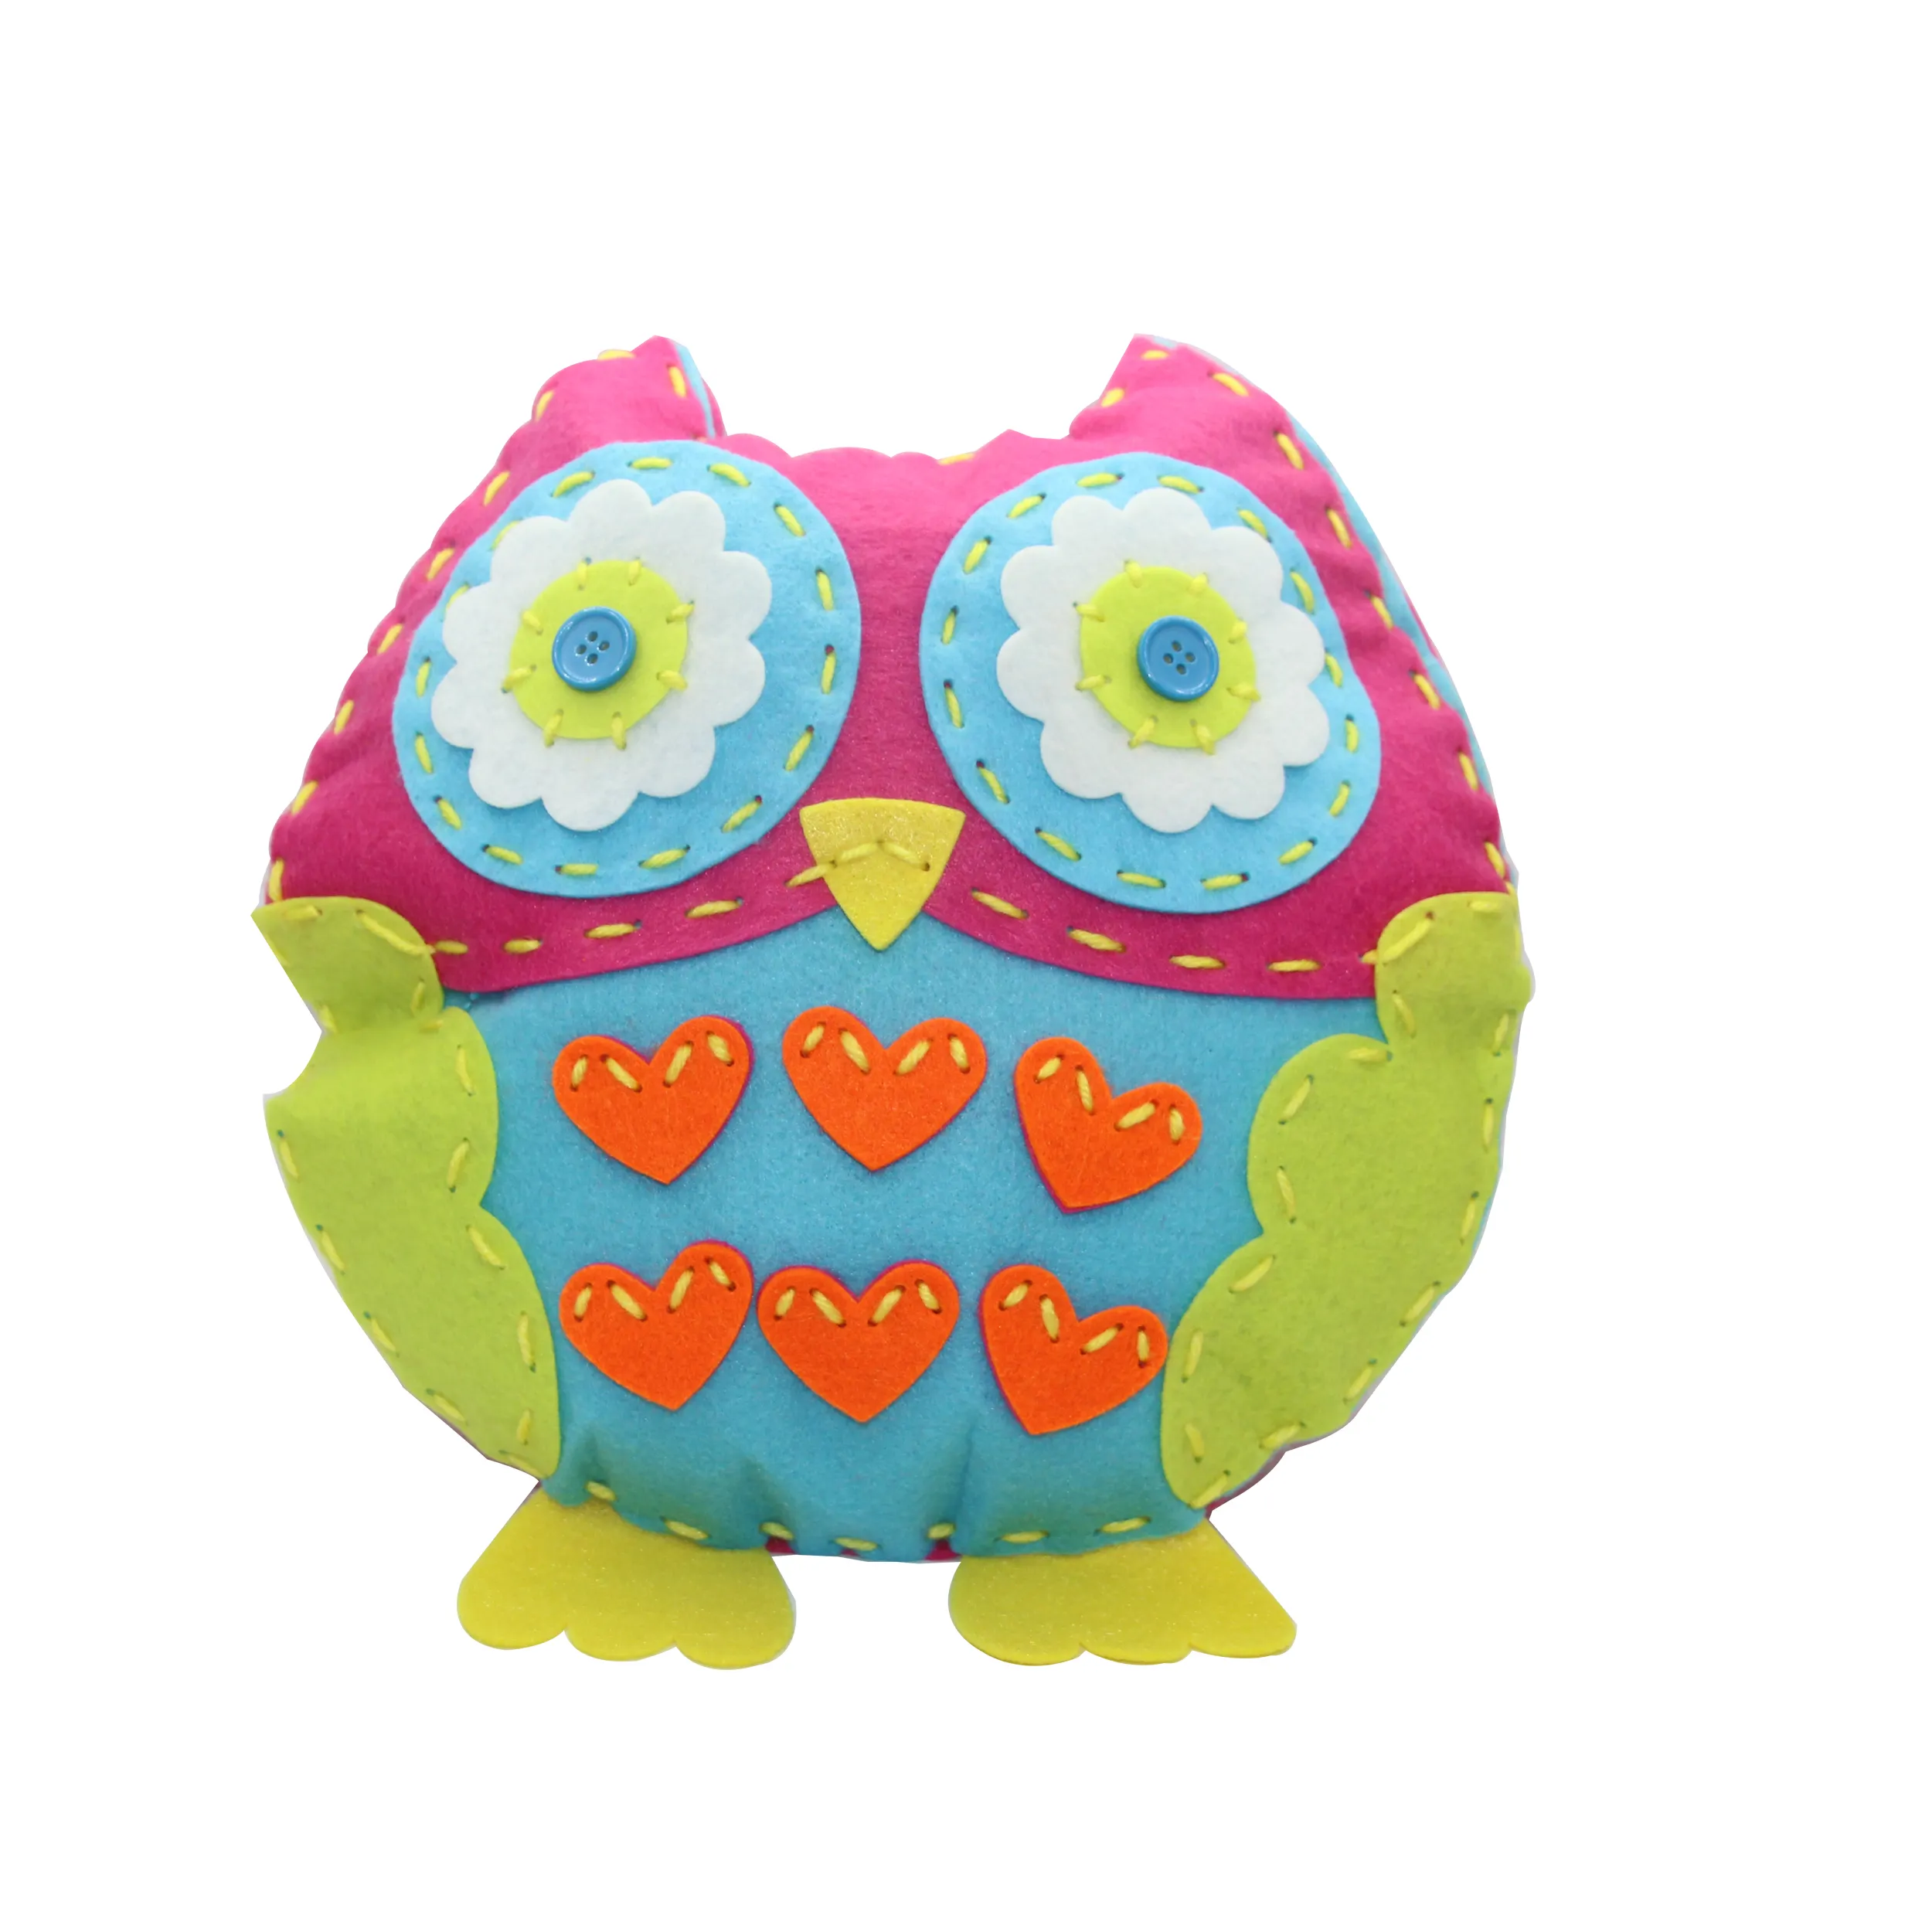 Learn to Sew Kit for Children DIY Felt Owl Pillow